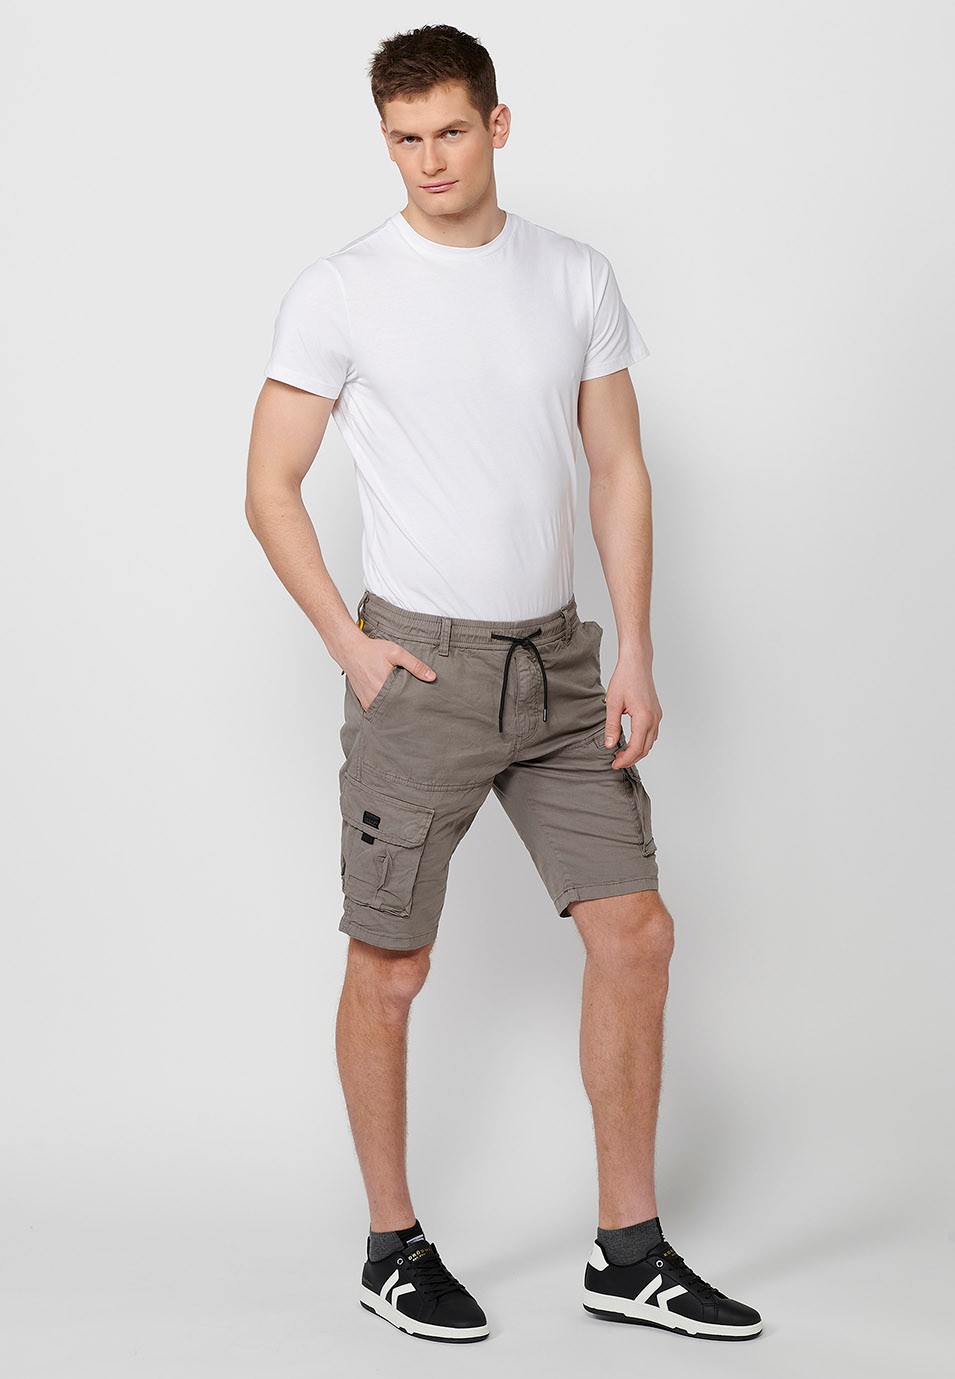 Pantalons curts càrrec amb Butxaques laterals amb solapa i Tancament davanter amb cremallera i botó Color Taupe per a Home